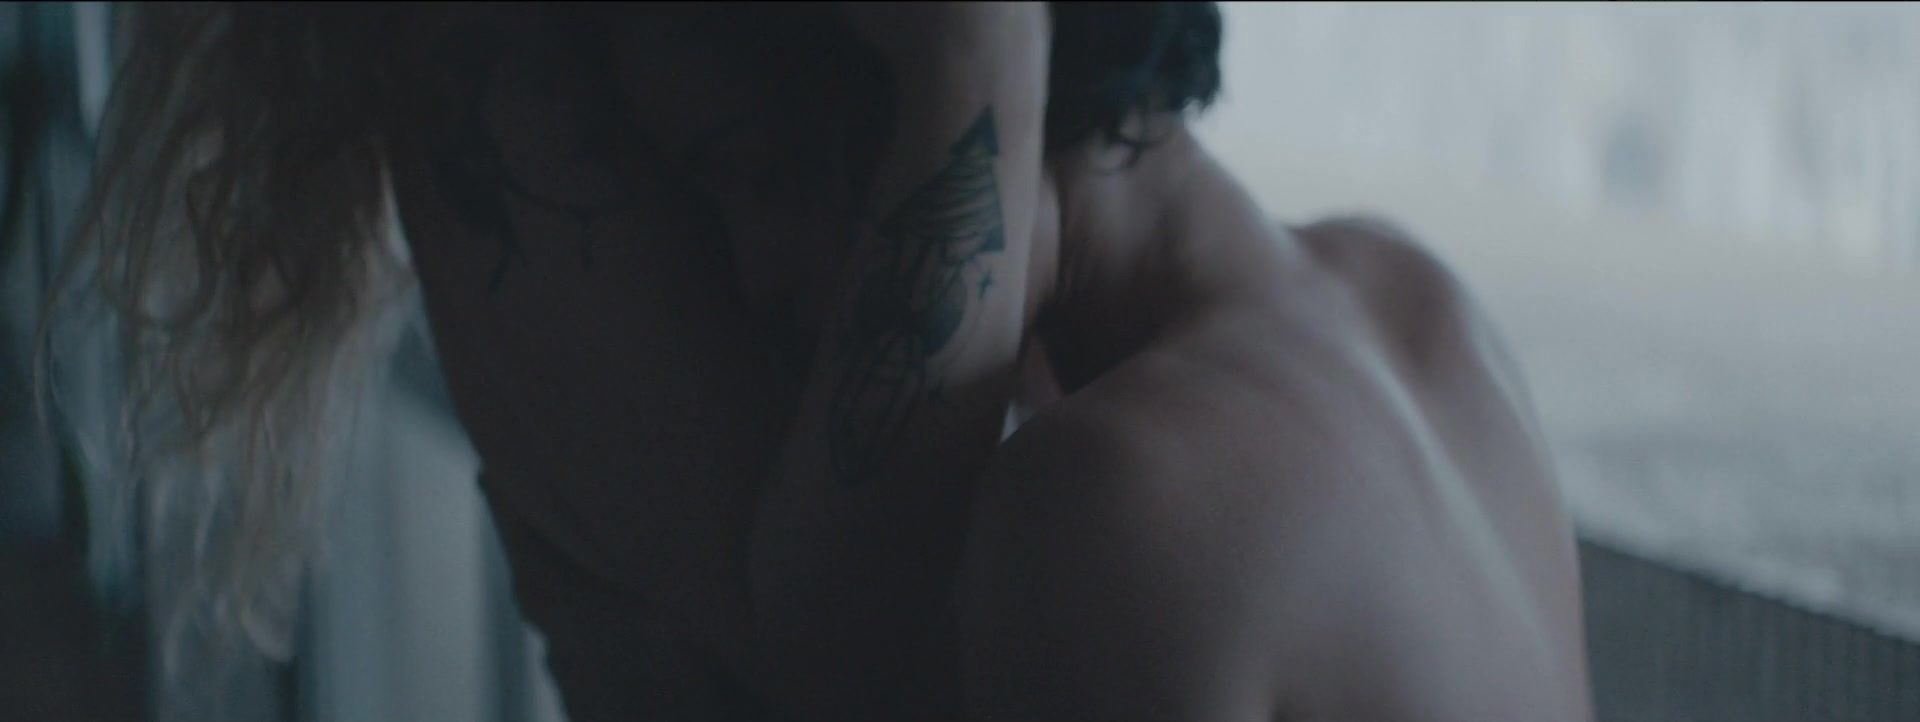 Submission Nanda Costa, Ana Canas nude - Eu Amo Voce (2018) Rough Sex Porn